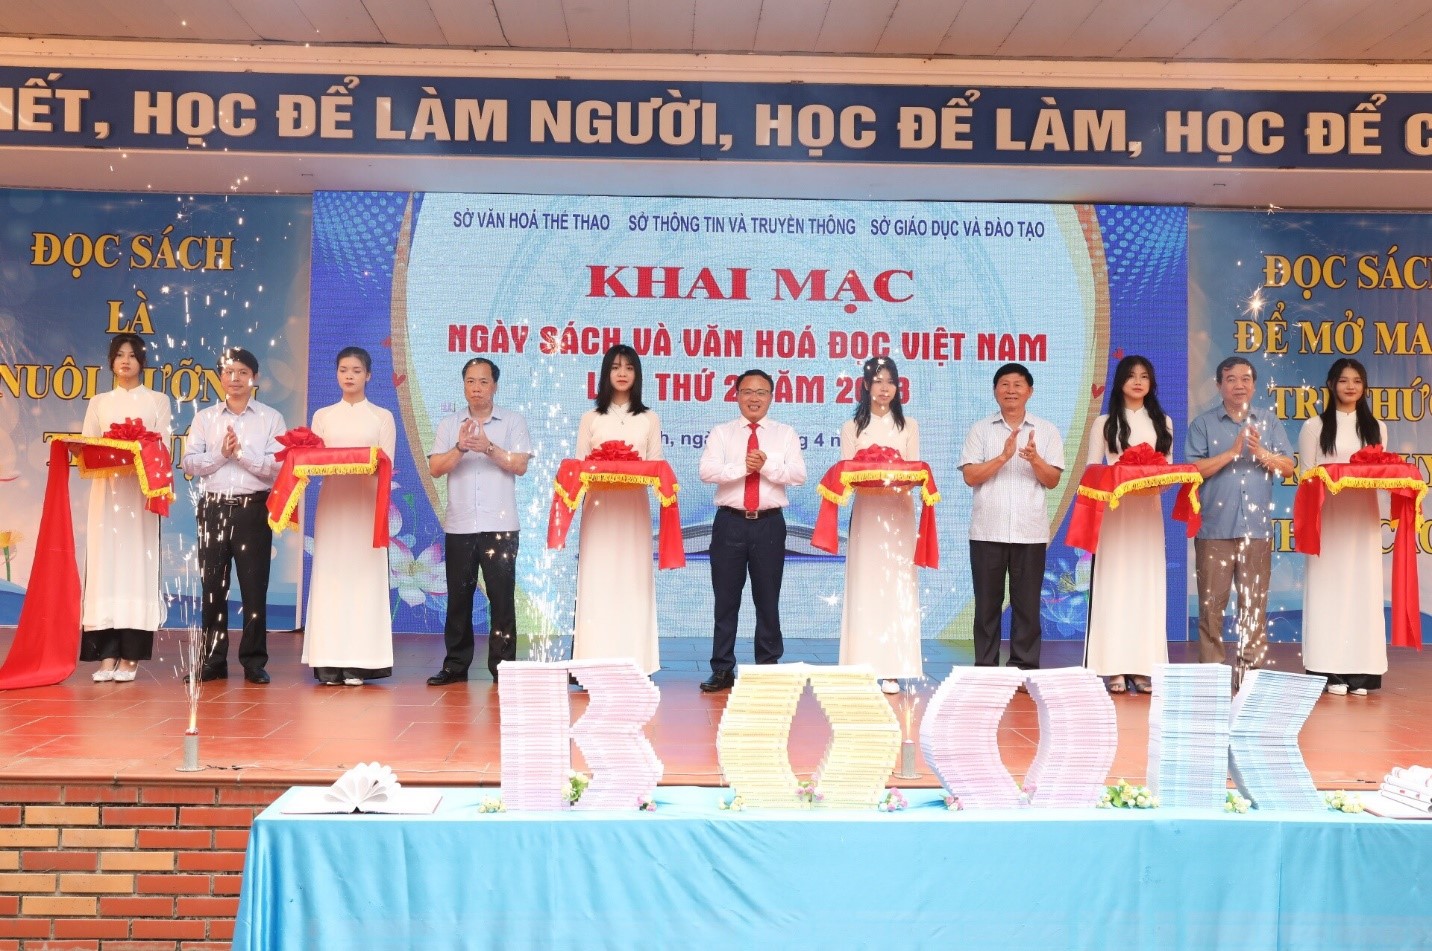 Khai mạc Ngày sách và Văn hóa đọc Việt Nam tỉnh Ninh Bình lần thứ 2 năm 2023